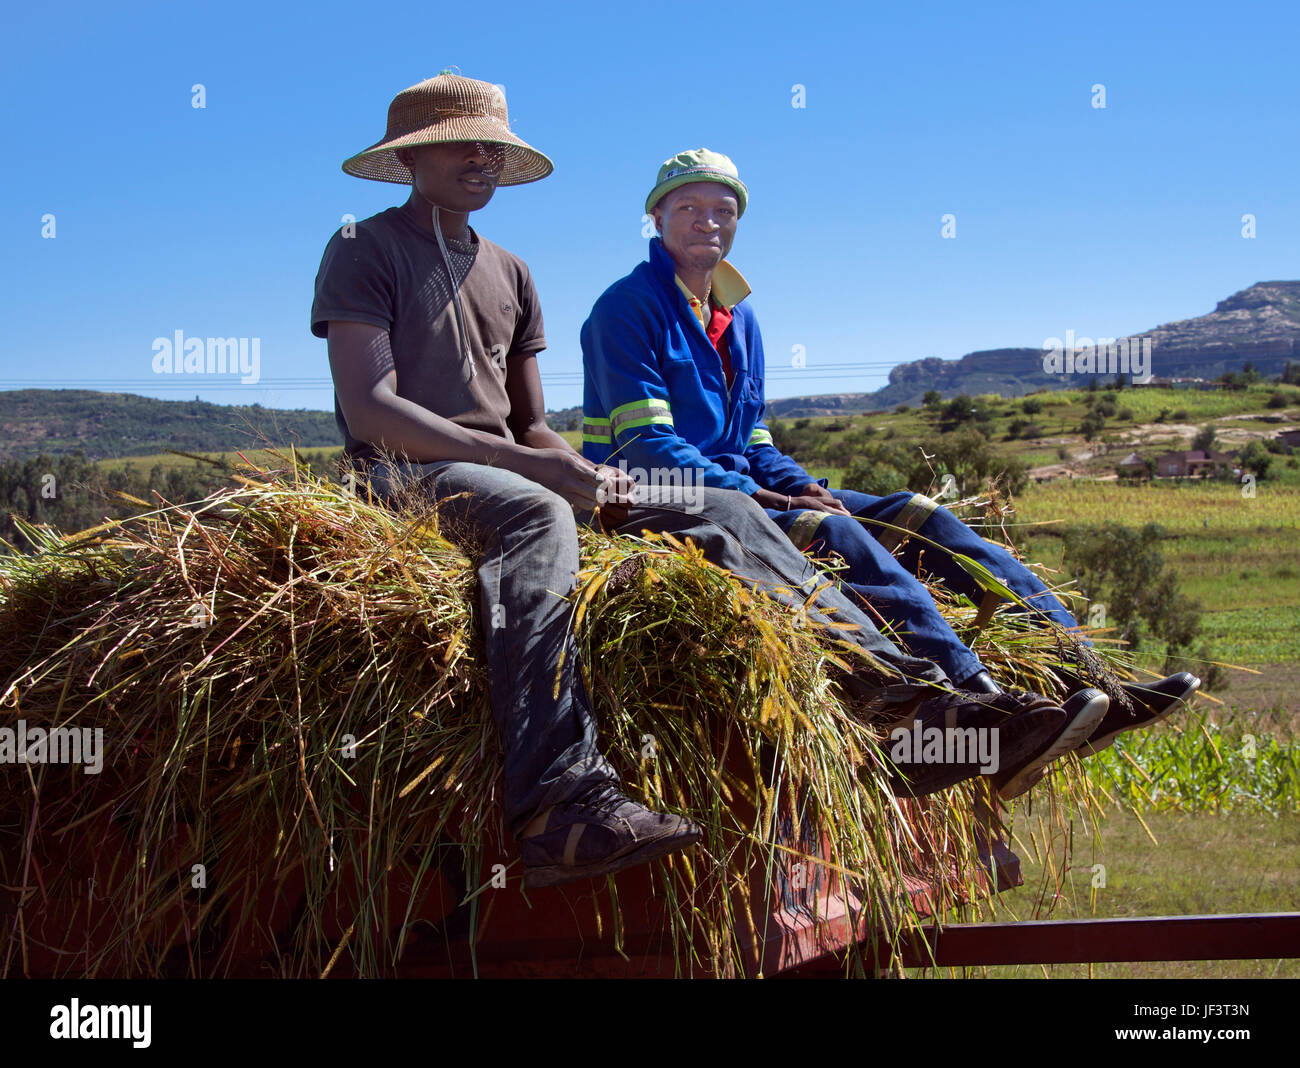 Close-up deux hommes à cheval charrette chargée de la vallée de la rivière Hlotse district de Leribe Lesotho Afrique du Sud Banque D'Images